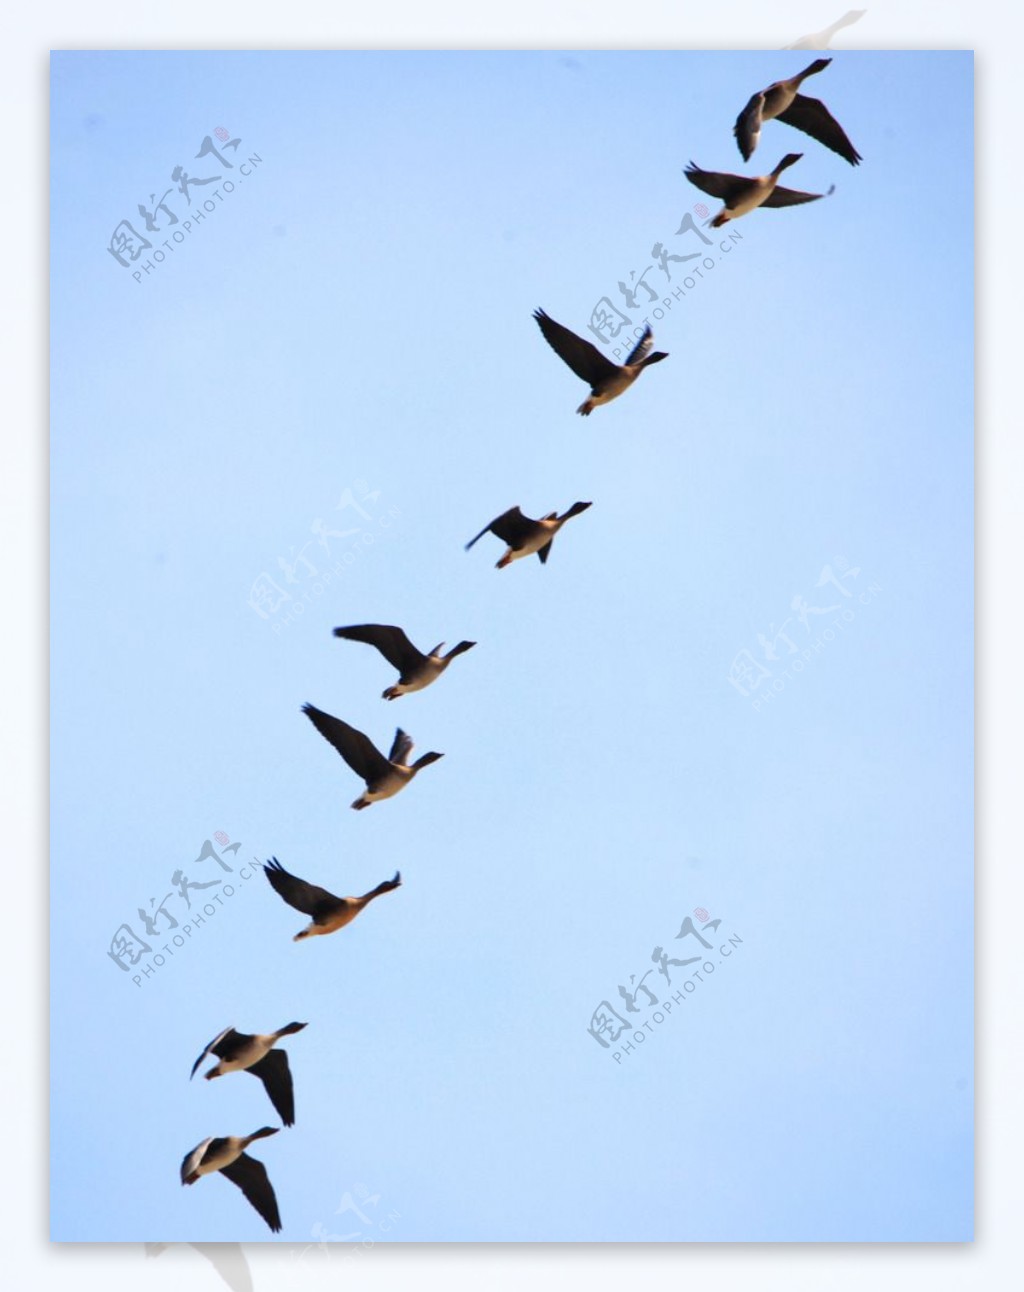 一群大雁从湖中飞出。高清摄影大图-千库网